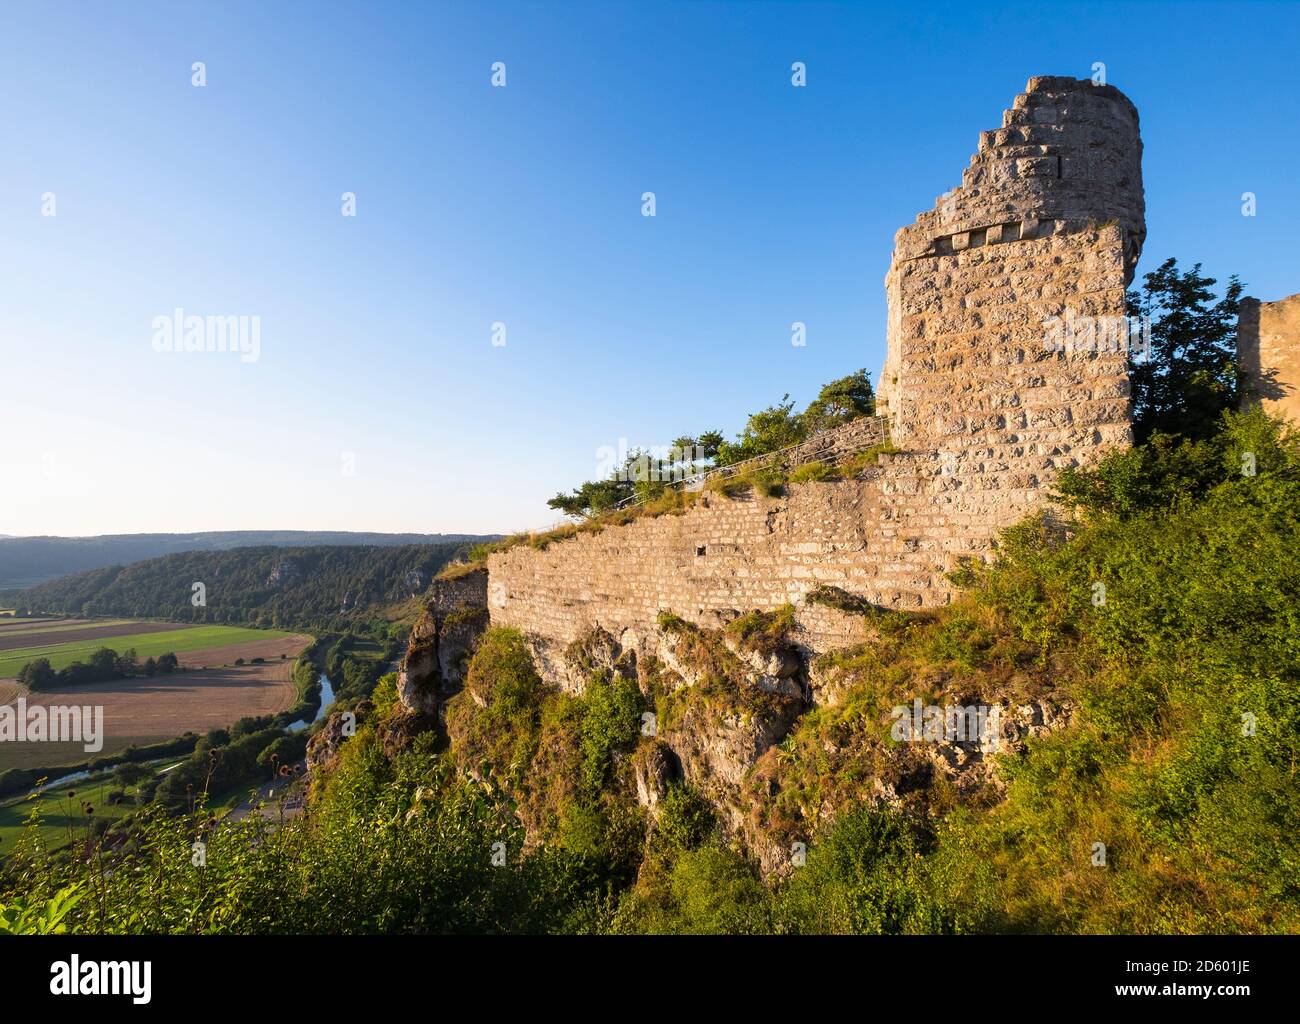 Alemania, Baviera, Valle de Altmuehl, ruinas del castillo Arnsberg y Altmuehl Foto de stock